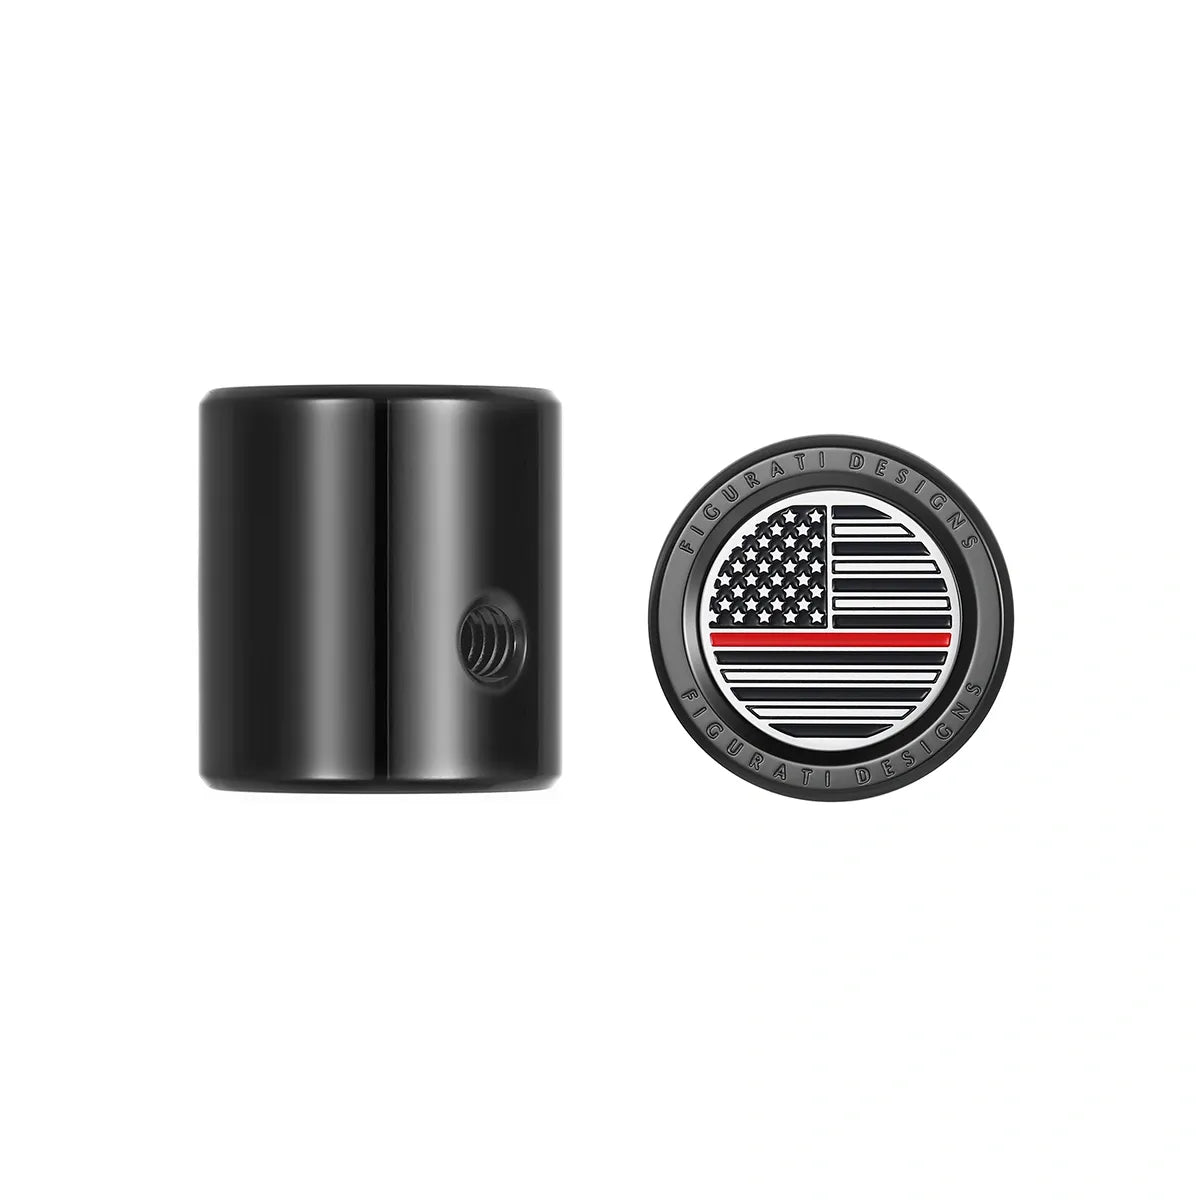 Cubierta de palanca de cambio de talón y punta - Bandera estadounidense de acero inoxidable/línea roja negra 